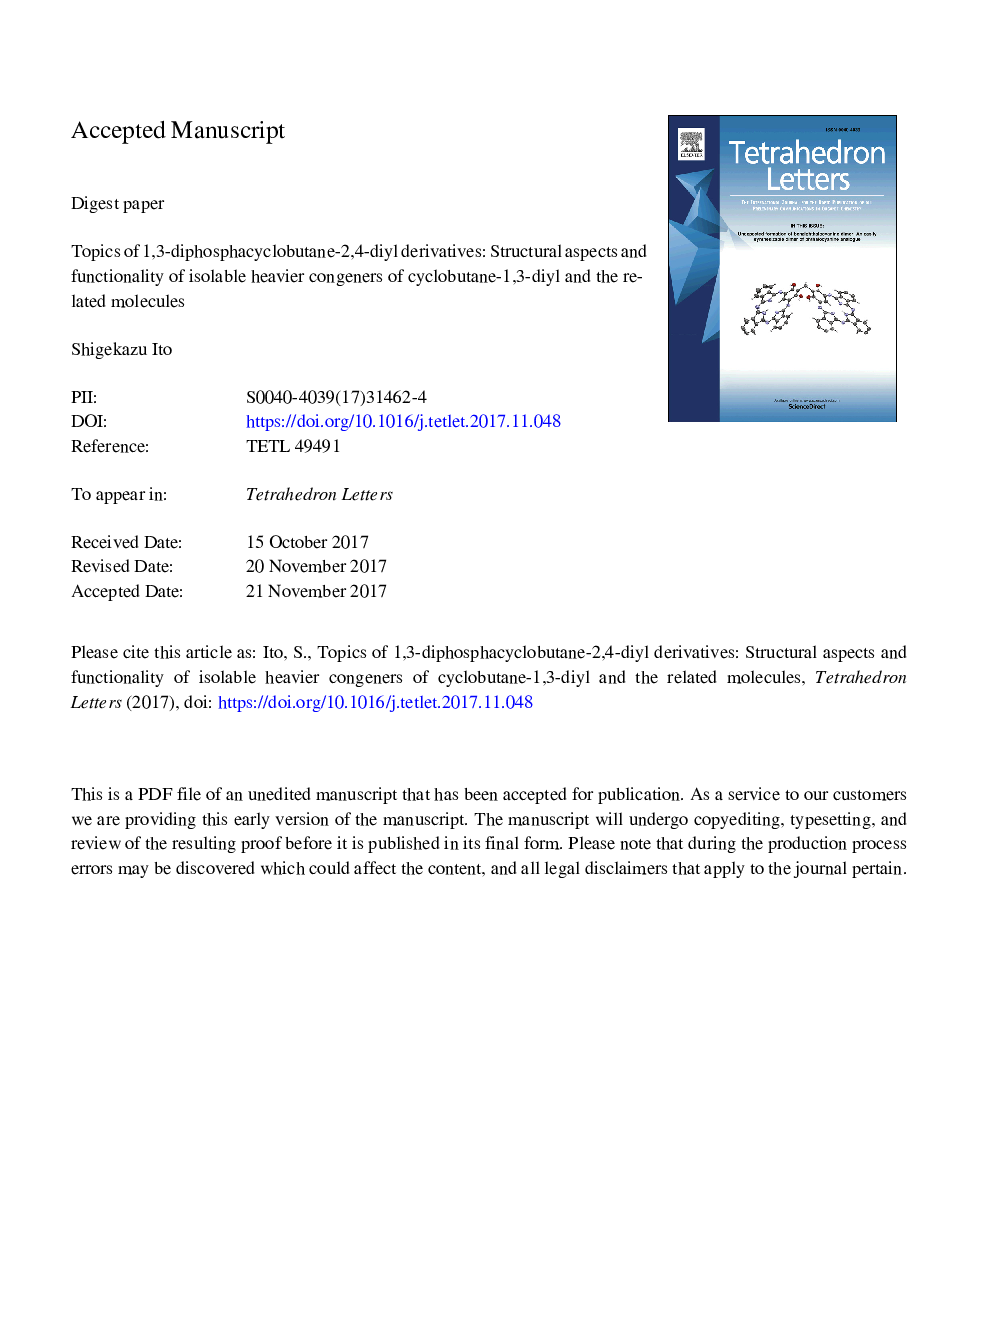 مضامین مشتقات 1،3-دی فسفسیفاکتوبوبیلن-2،4-دییل: جنبه های ساختاری و عملکرد سازنده های جدی تر جداسازی سیکلووباتان-1،3-دییل و مولکول های مرتبط 